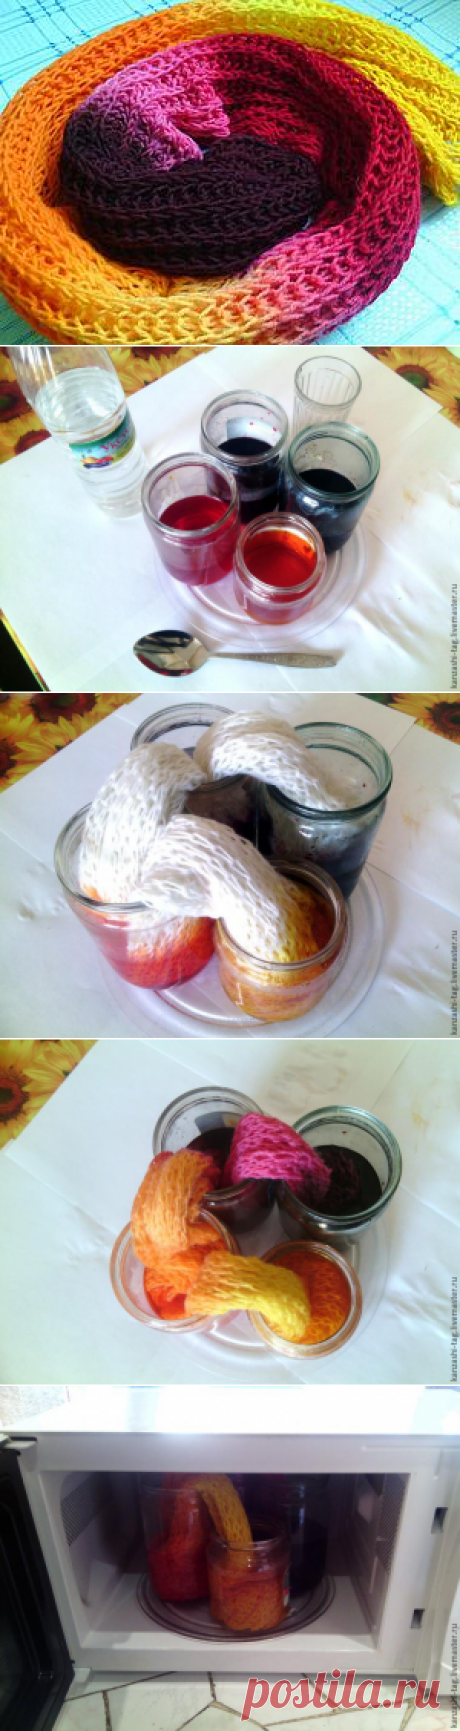 Красим старый шарф с помощью красителей для яиц - Ярмарка Мастеров - ручная работа, handmade